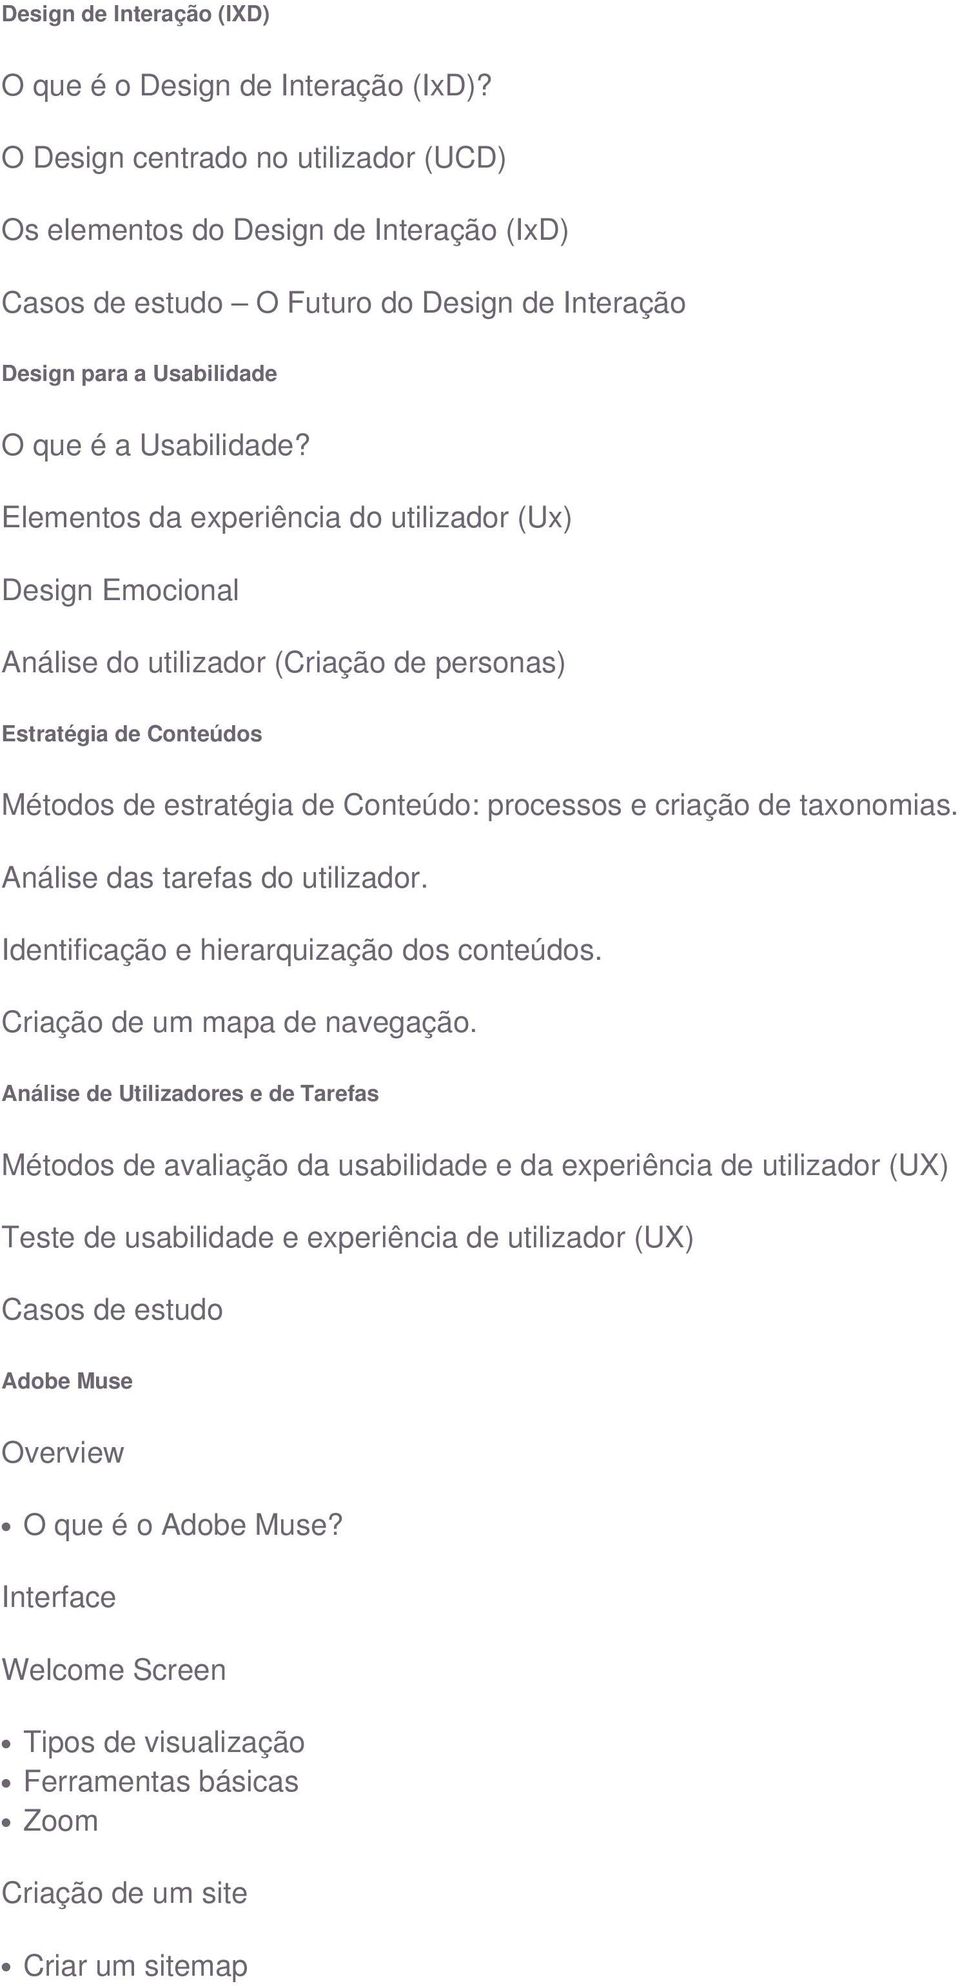 Elementos da experiência do utilizador (Ux) Design Emocional Análise do utilizador (Criação de personas) Estratégia de Conteúdos Métodos de estratégia de Conteúdo: processos e criação de taxonomias.